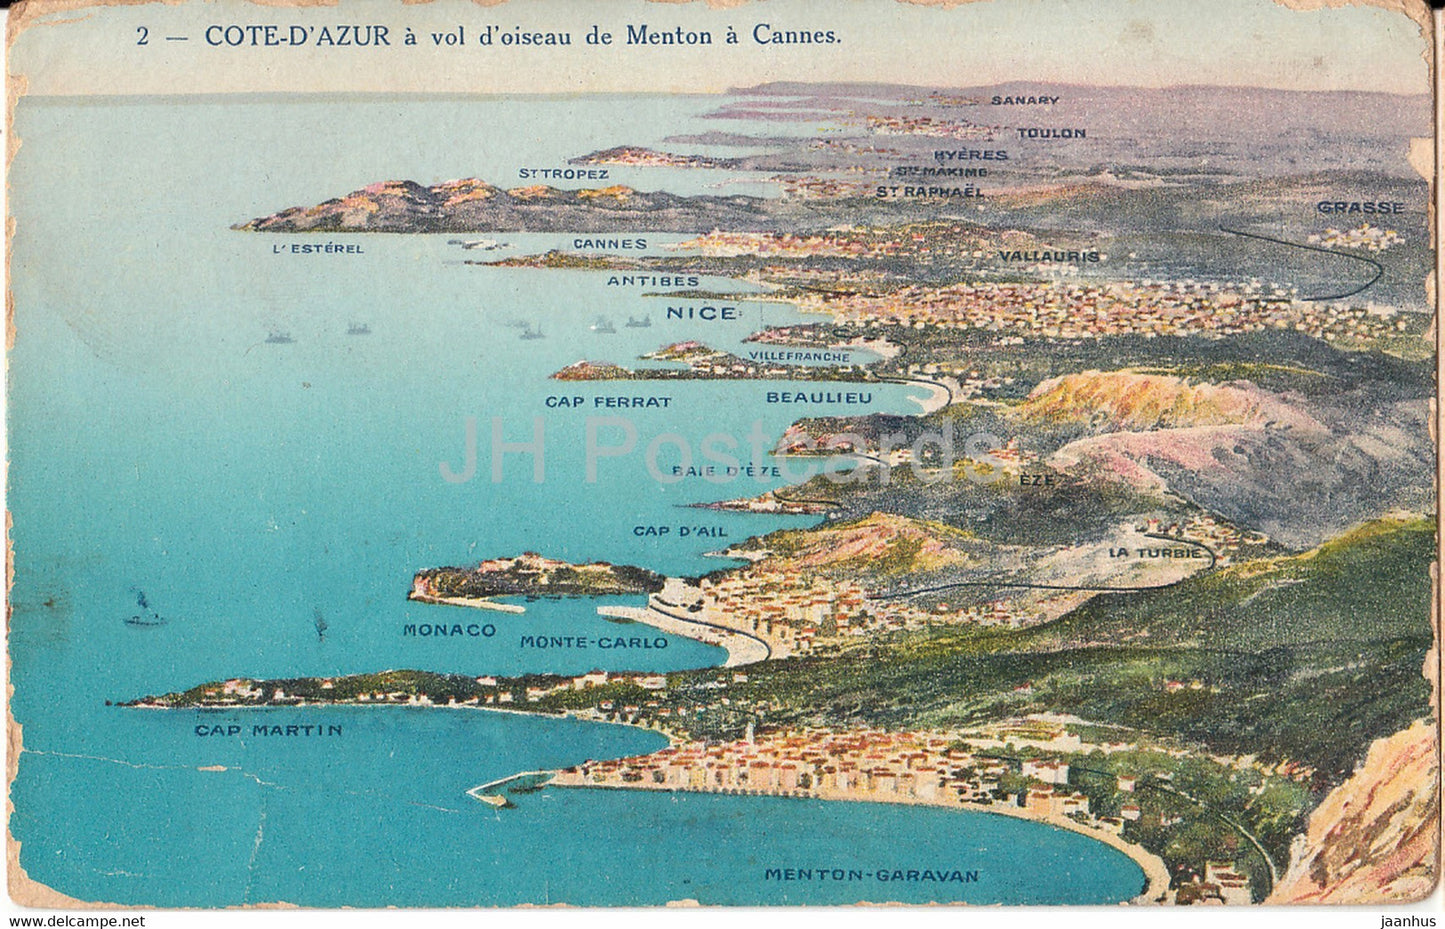 Cote d'Azur - a vol d'oiseau de Menton a Cannes - 2 - old postcard - France - unused - JH Postcards